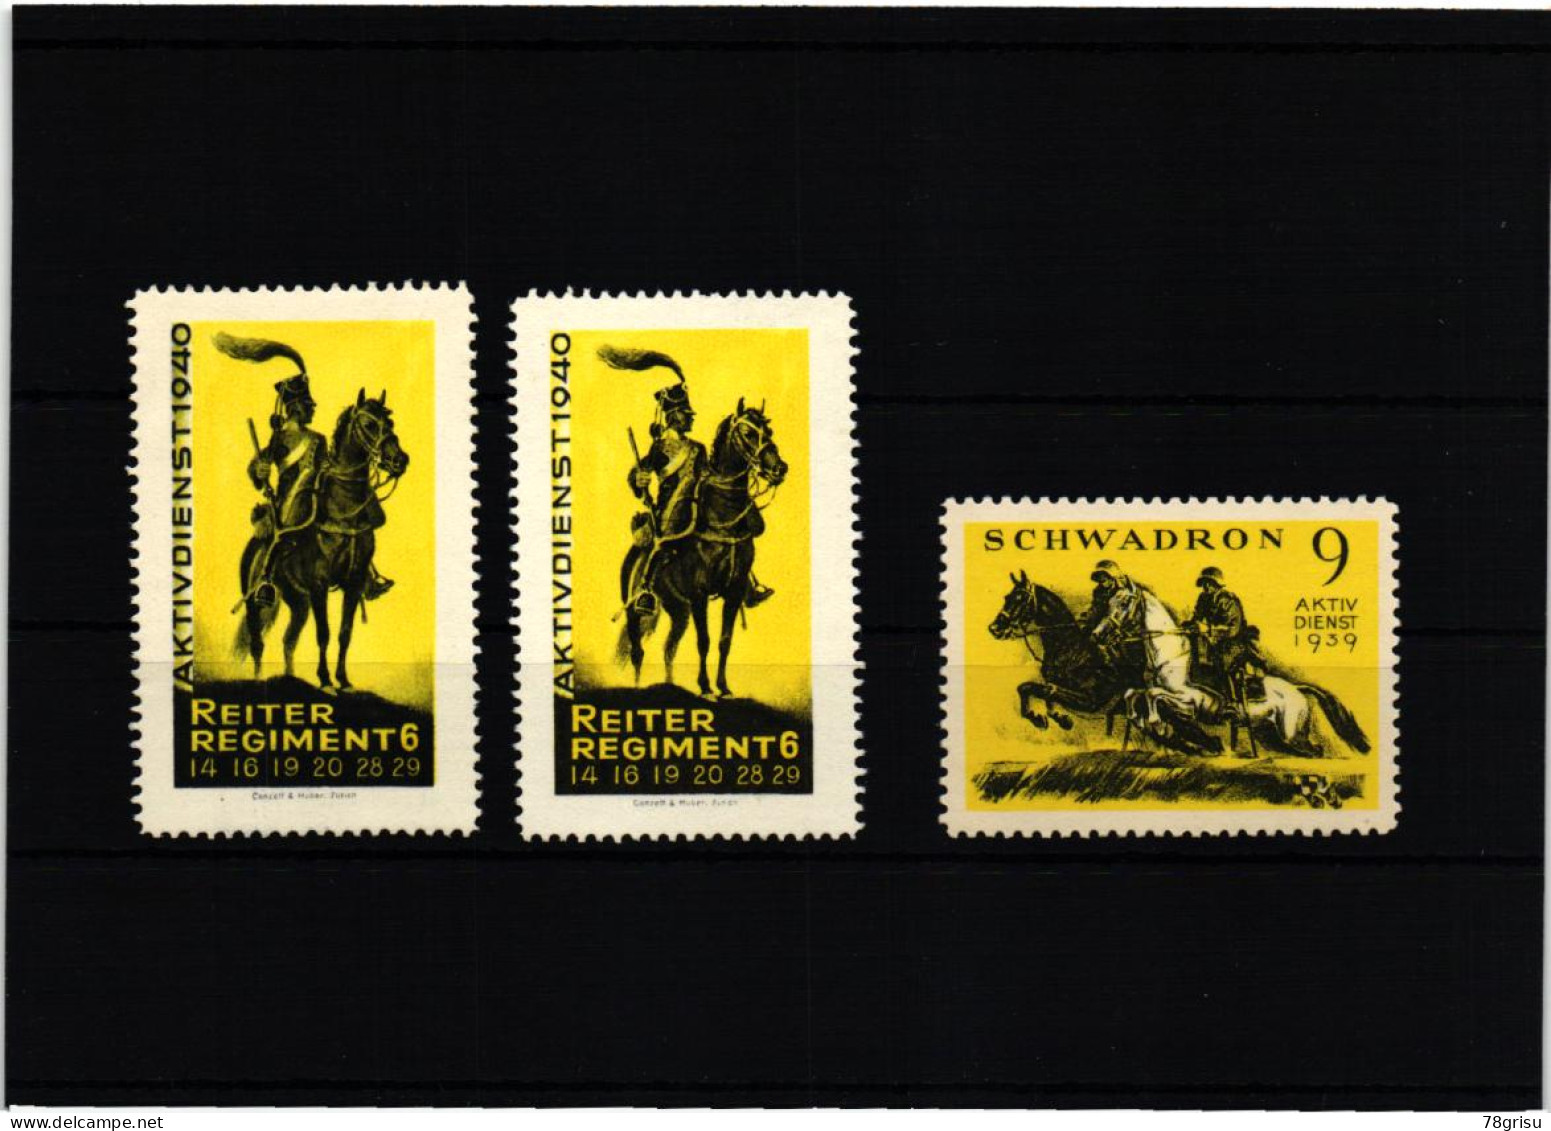 Schweiz Soldatenmarken, Reiter Regiment Schwadron , Aktivdienst 1929 1940 - Vignettes